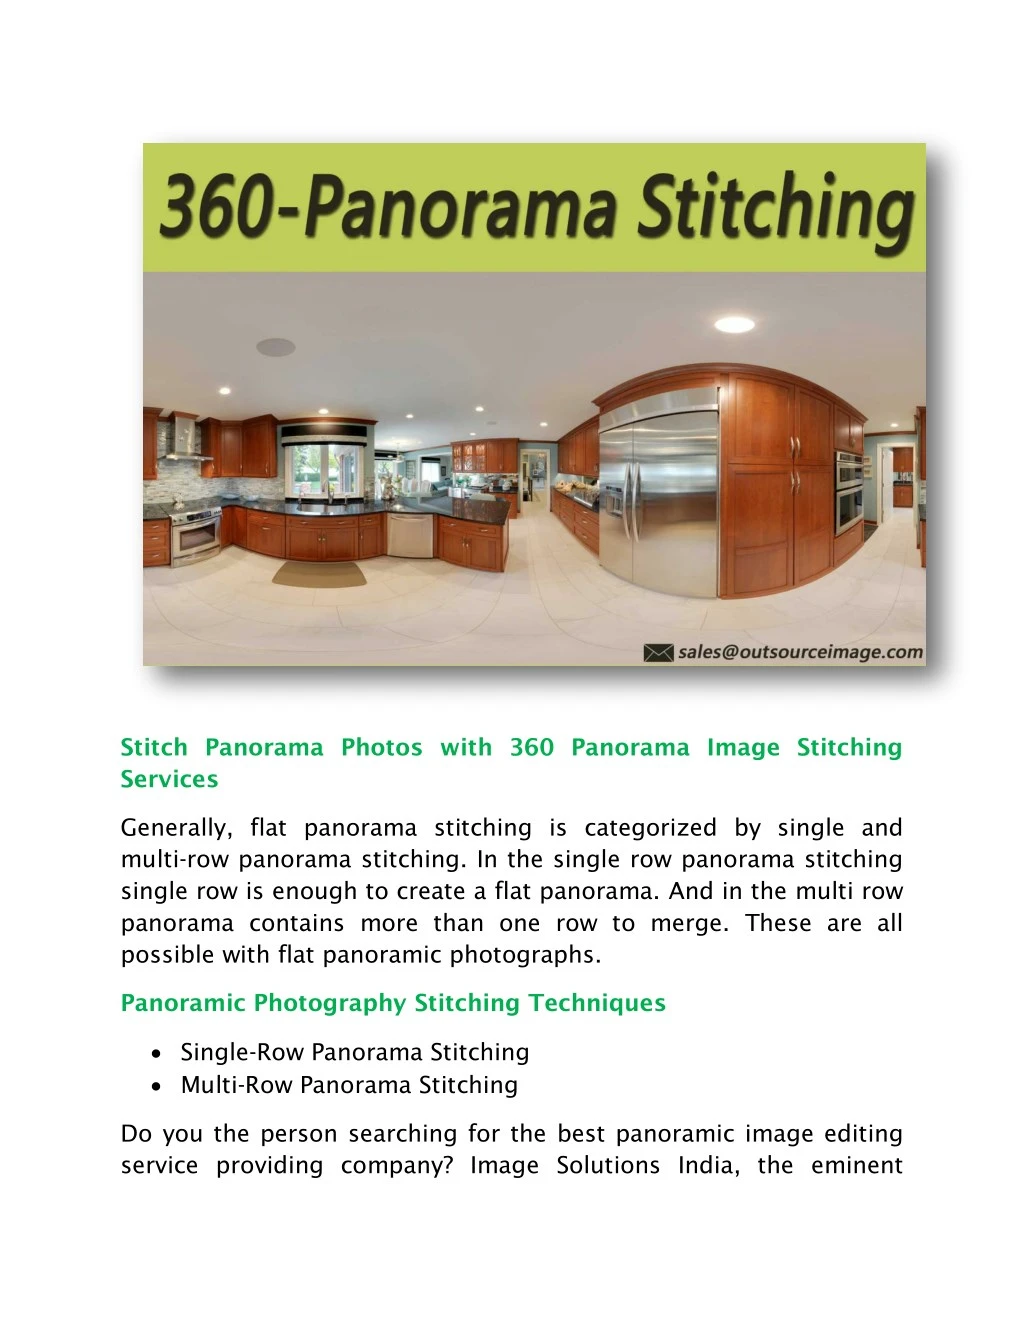 stitch panorama photos with 360 panorama image